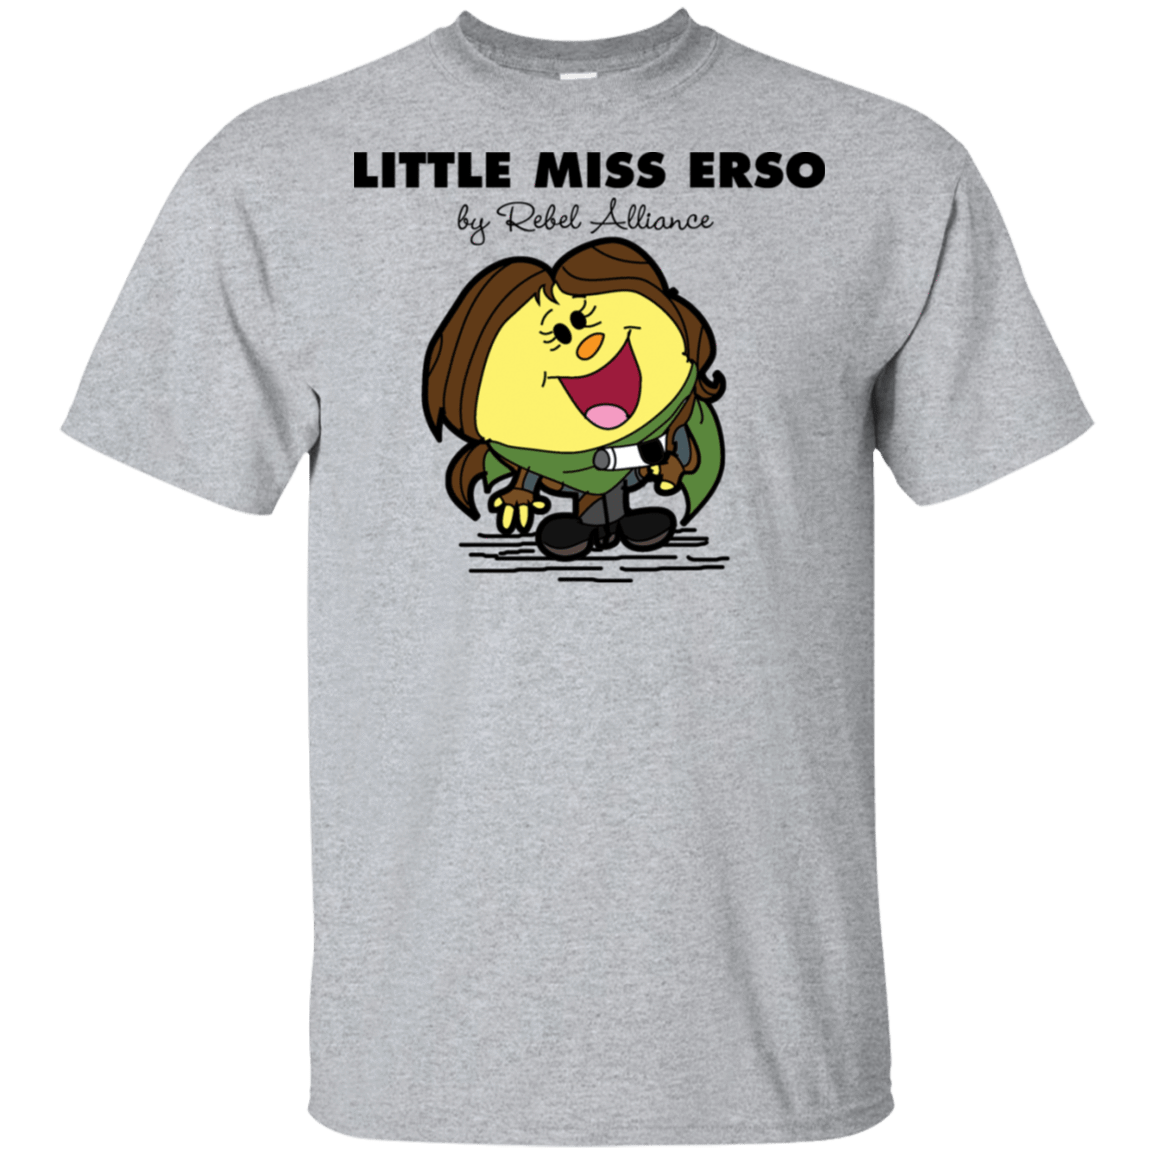 T-Shirts Sport Grey / S Little Miss Erso T-Shirt